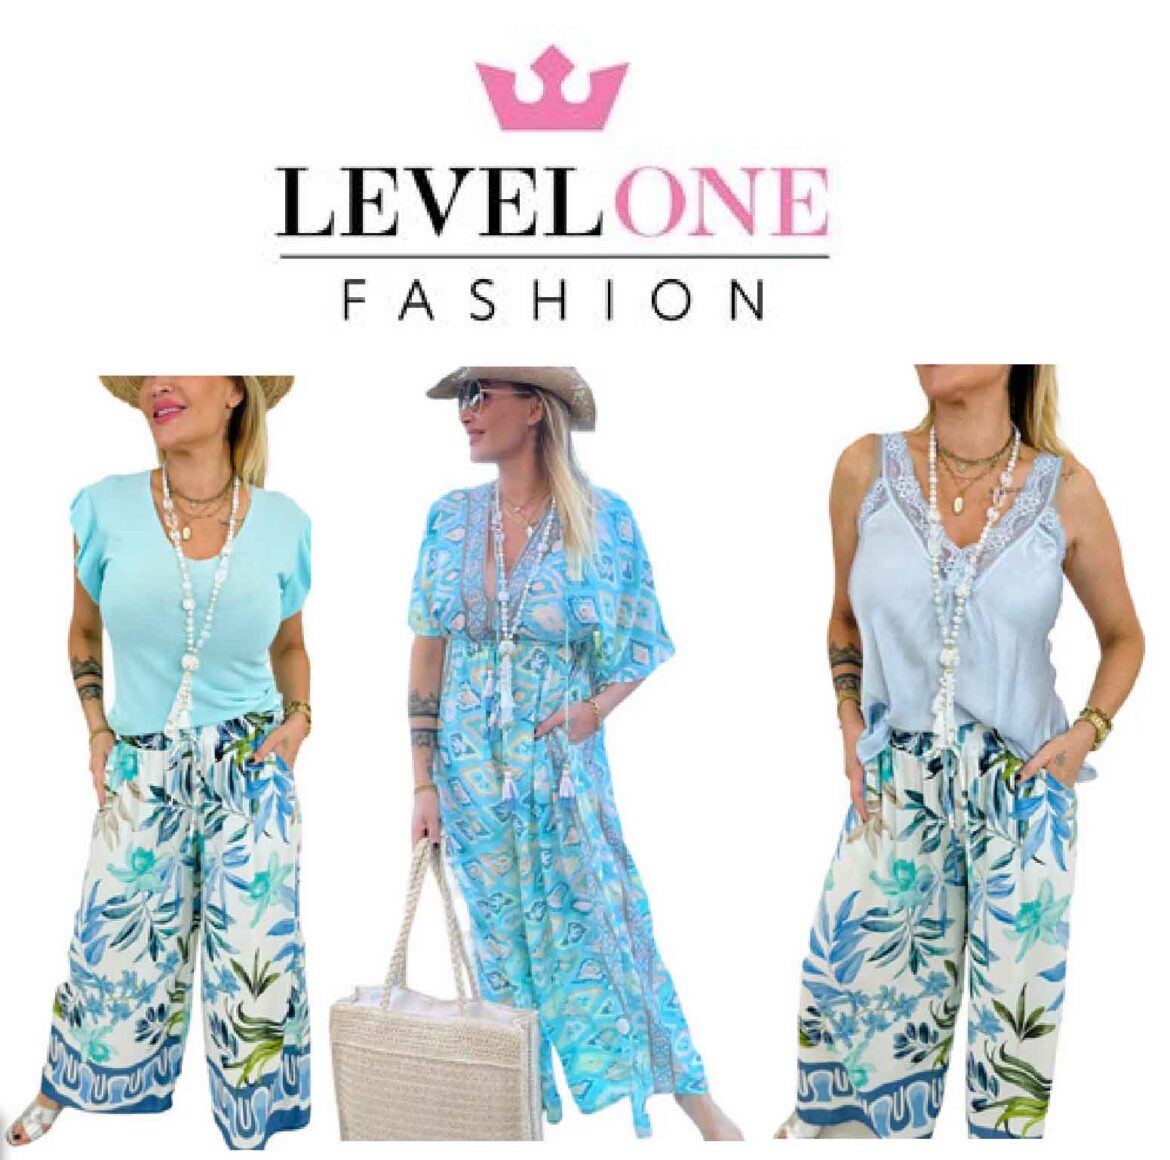 Einführung in Levelone Fashion